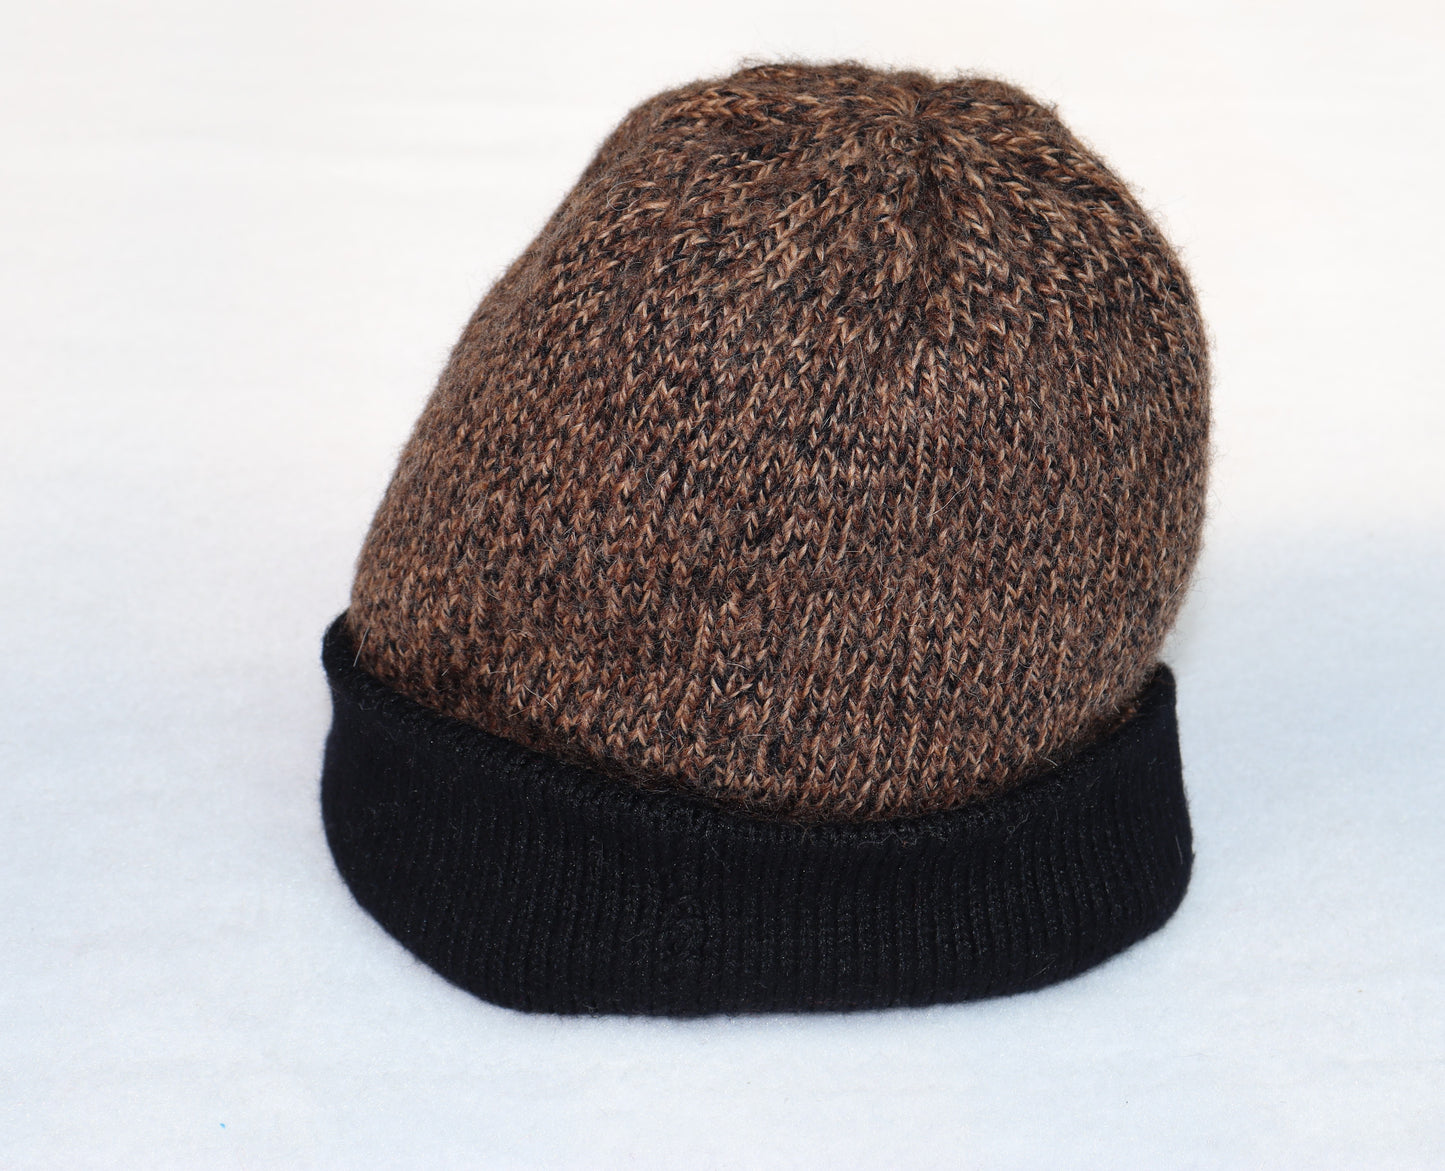 CH.204-Warm Hat